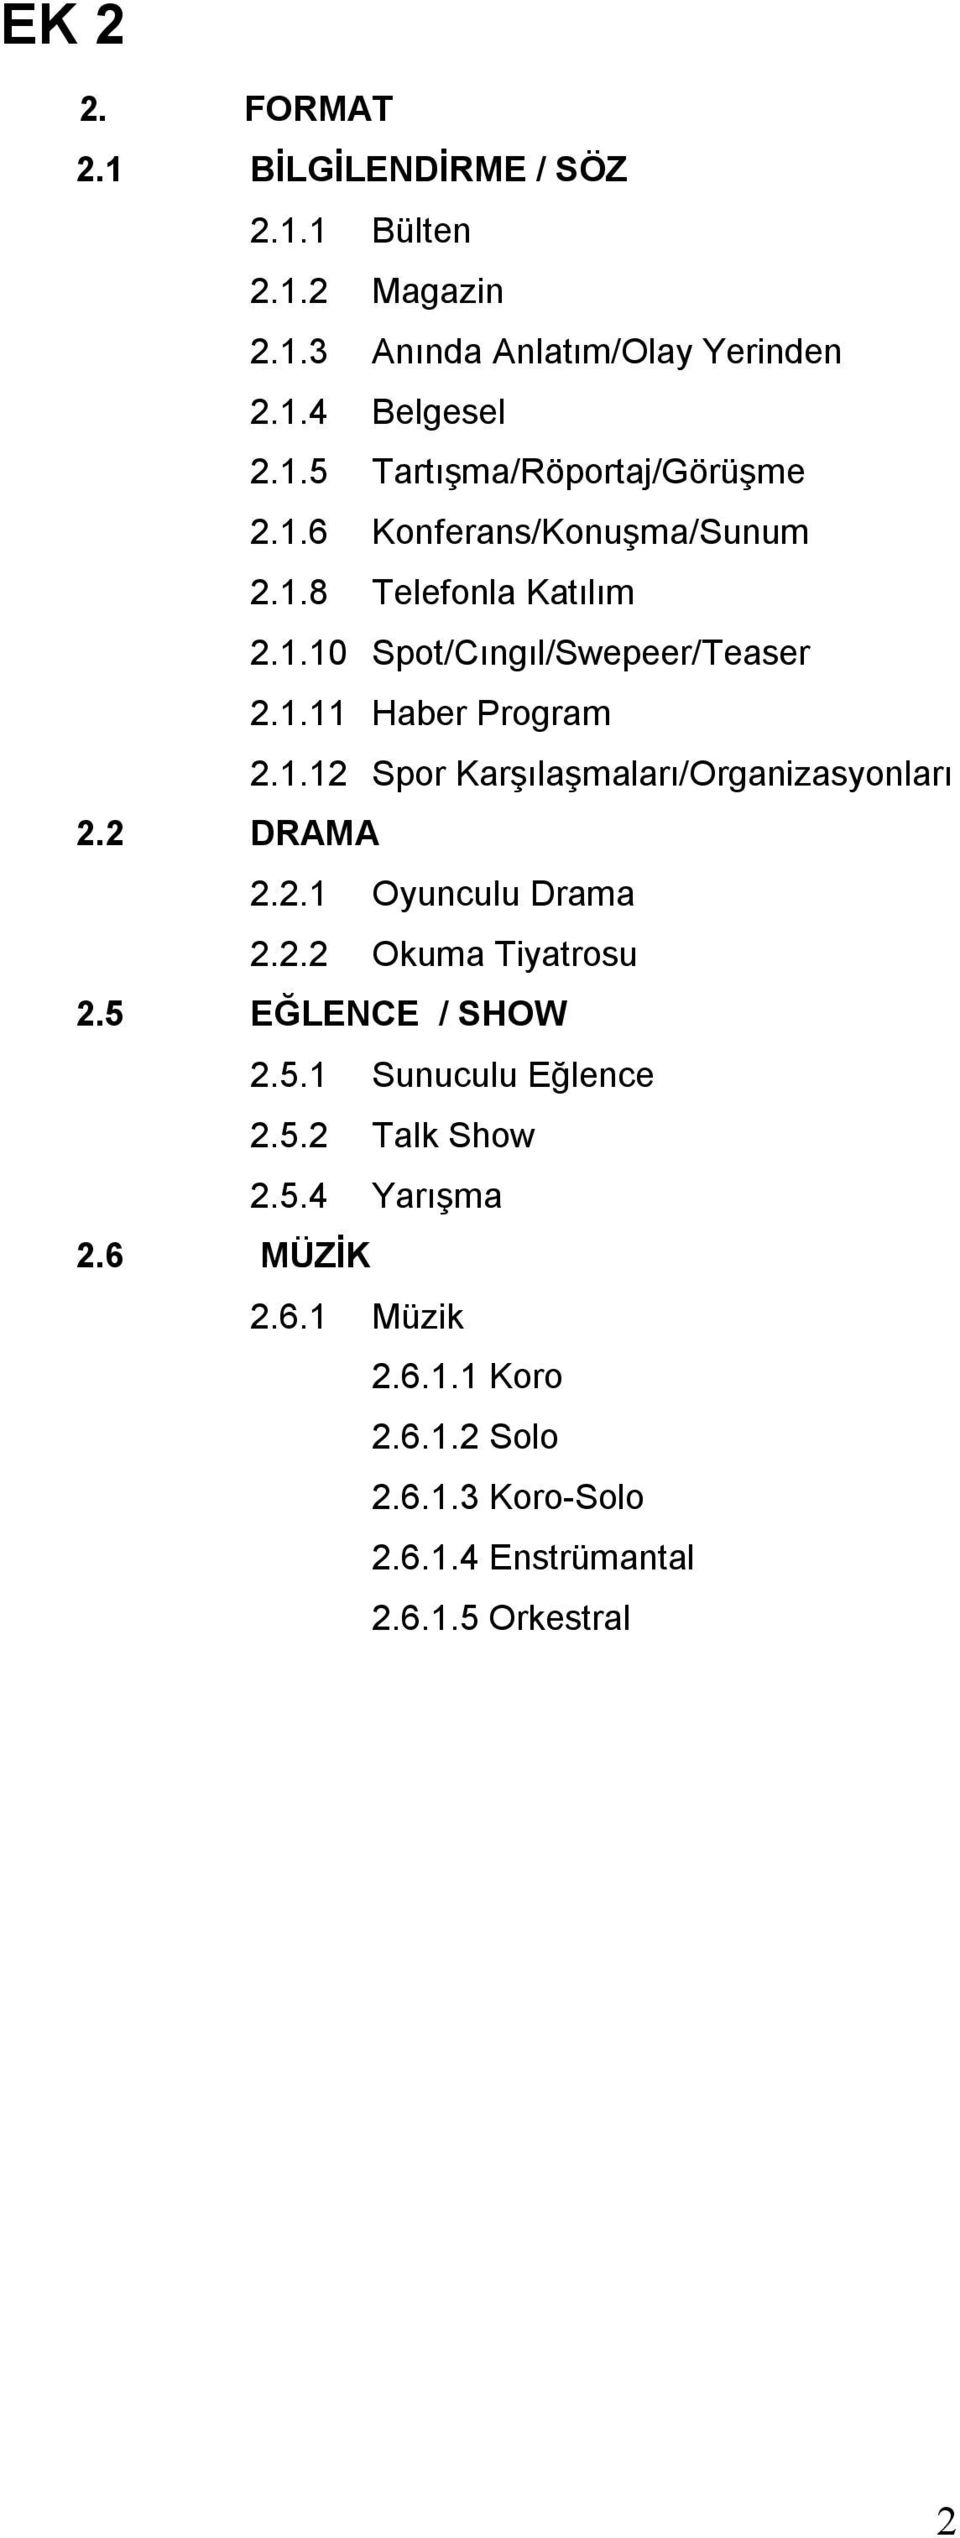 2 DRAMA 2.2.1 Oyunculu Drama 2.2.2 Okuma Tiyatrosu 2.5 EĞLENCE / SHOW 2.5.1 Sunuculu Eğlence 2.5.2 Talk Show 2.5.4 Yarışma 2.